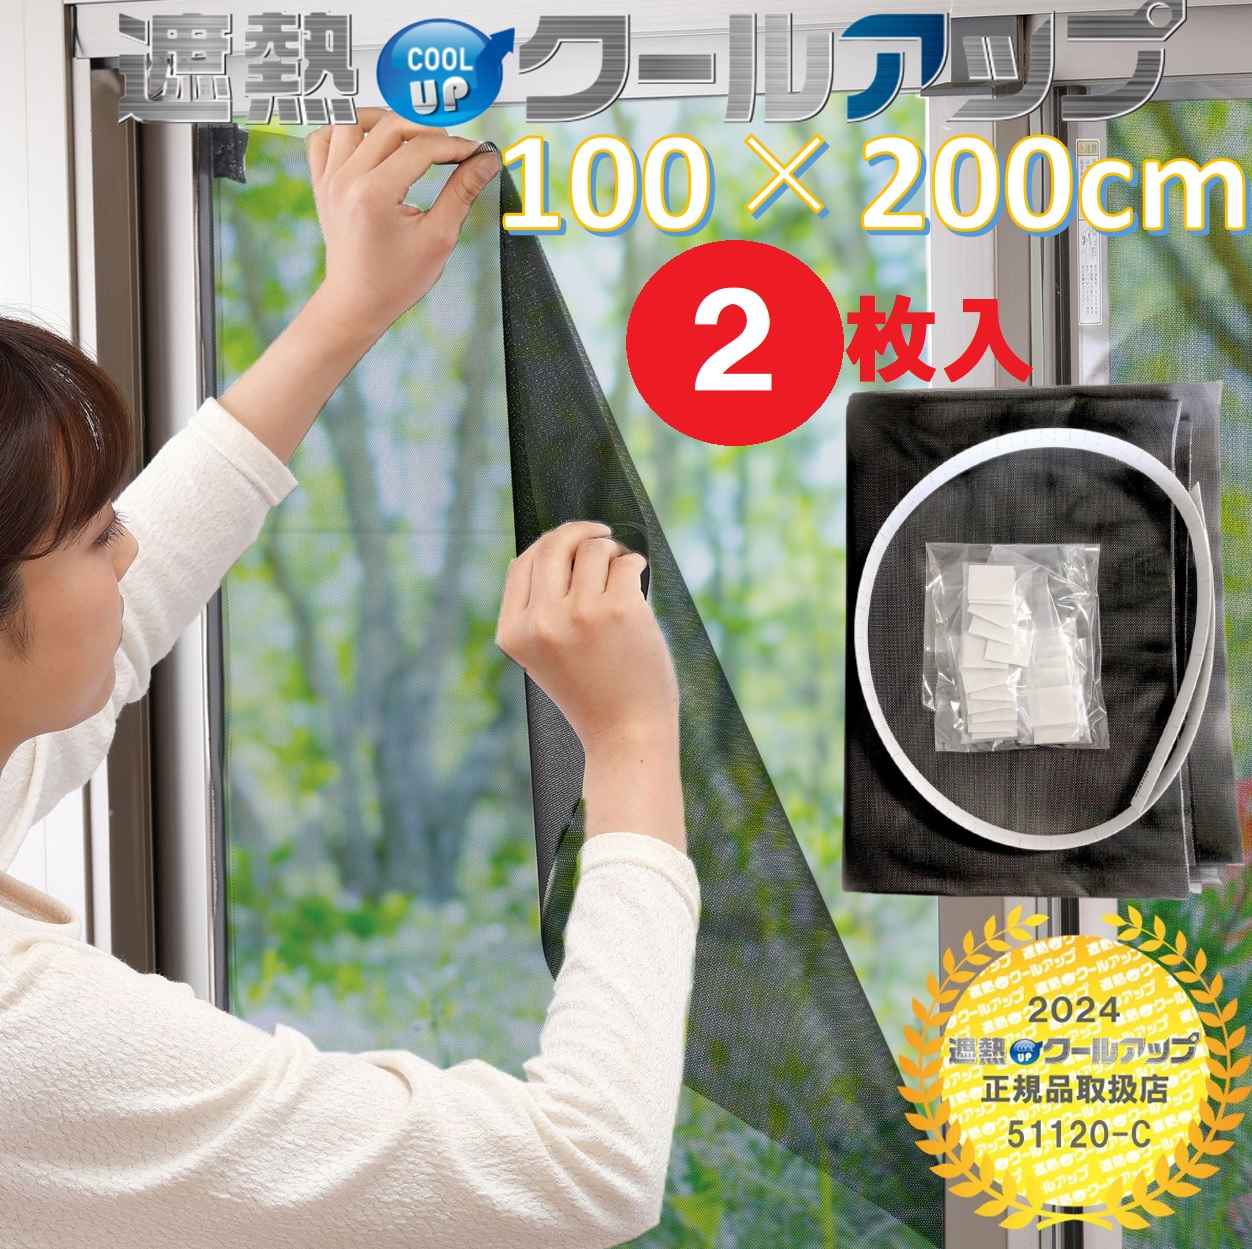 【楽天市場】セキスイ 遮熱クールアップ 100×200cm 2セット(4枚入 